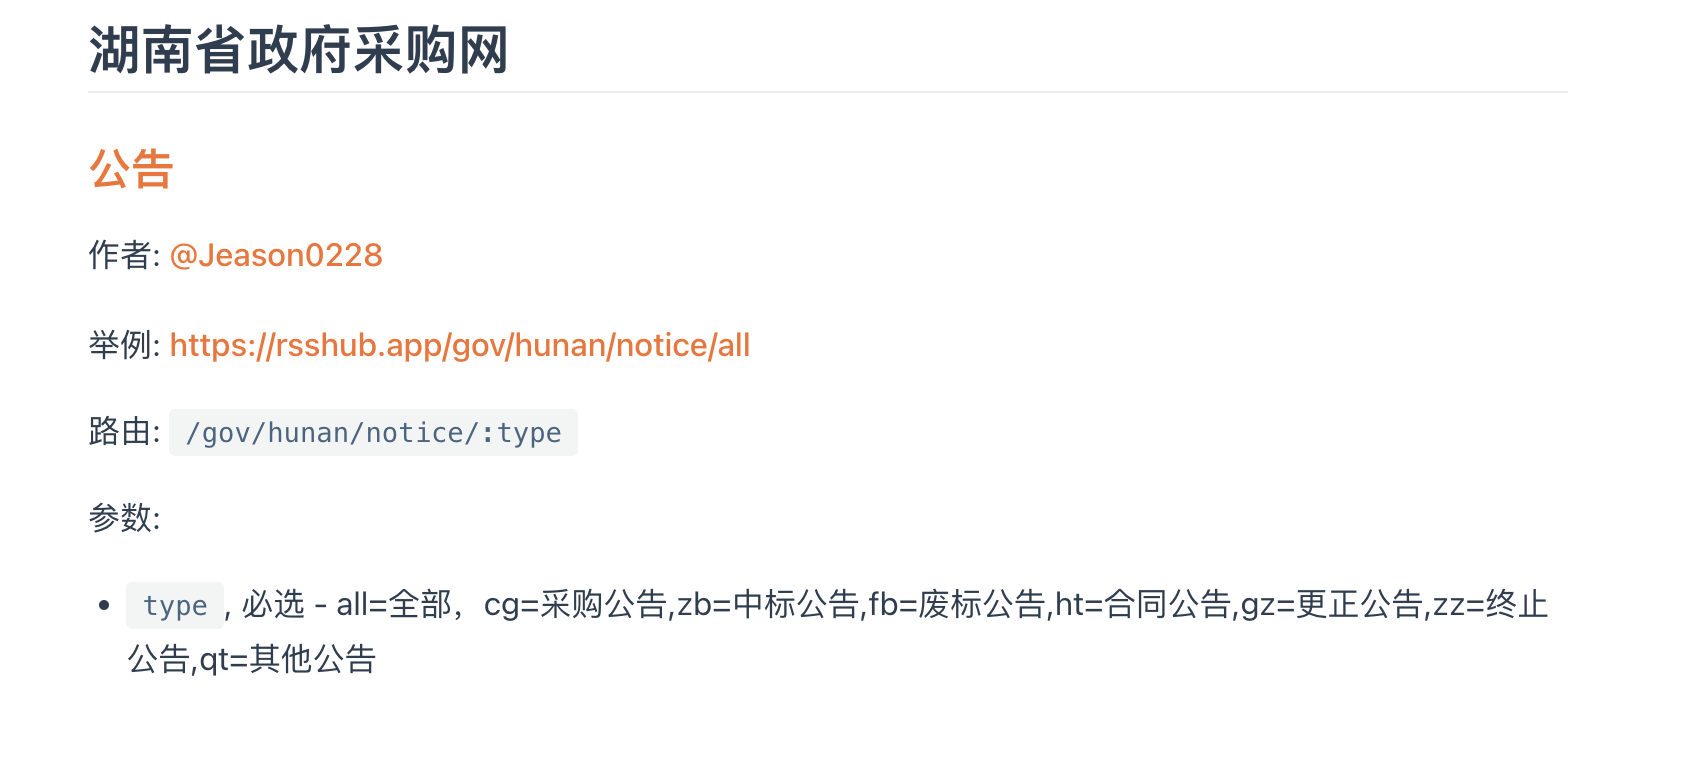 湖南省政府采购网的RSSHub文档